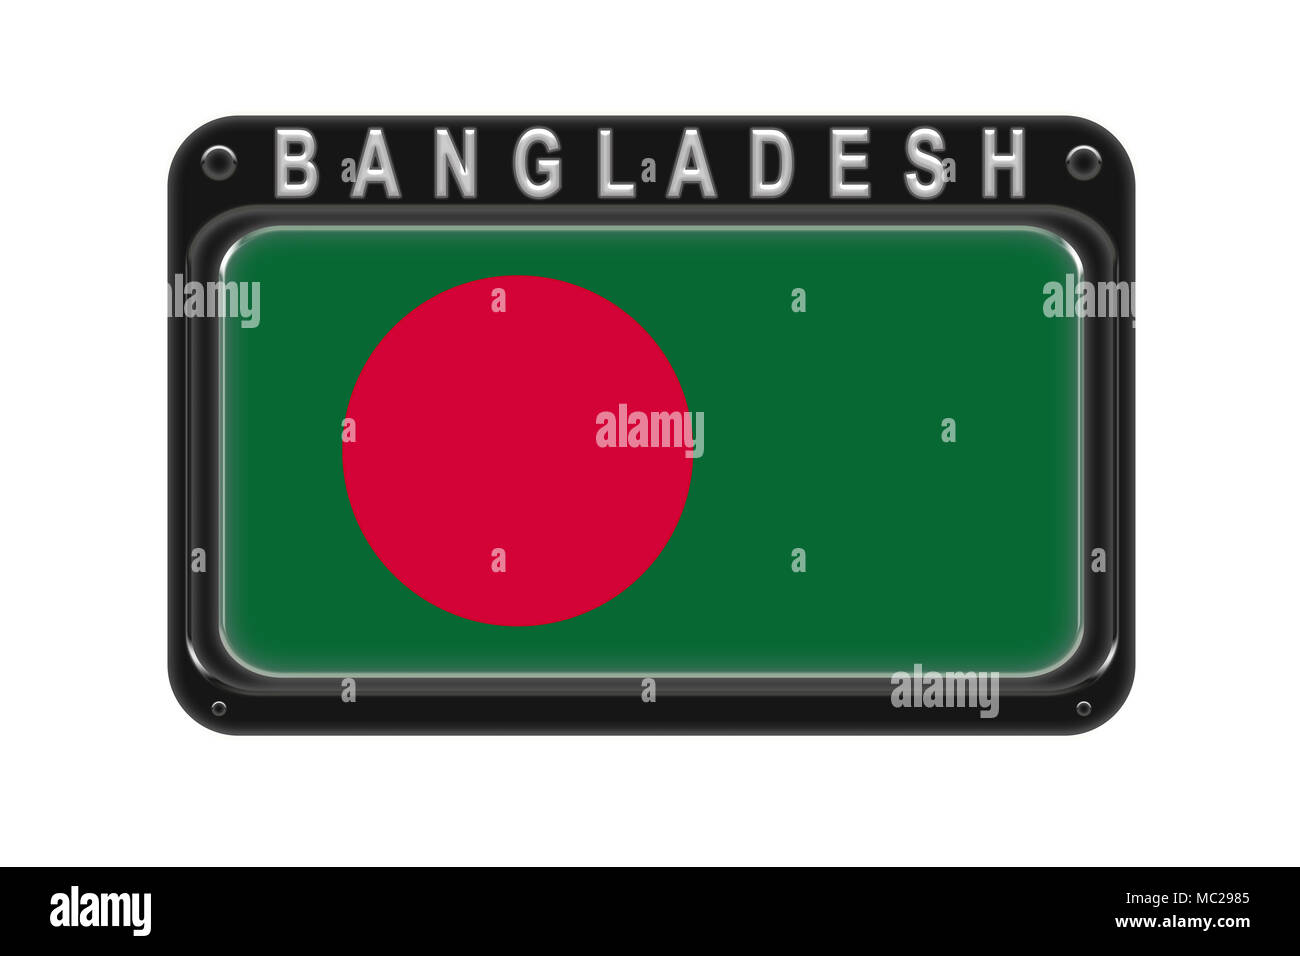 BanglaDes đang trỗi dậy và trở thành một quốc gia phát triển. Nếu bạn cần hình ảnh chất lượng cao về quốc kỳ, chấm đỏ hay màu xanh, hãy ghé qua bộ sưu tập ảnh độc quyền của chúng tôi. Với độ phân giải tuyệt vời và độ chân thực, chúng tôi hứa sẽ mang đến cho bạn những hình ảnh tốt nhất về Bangladesh.